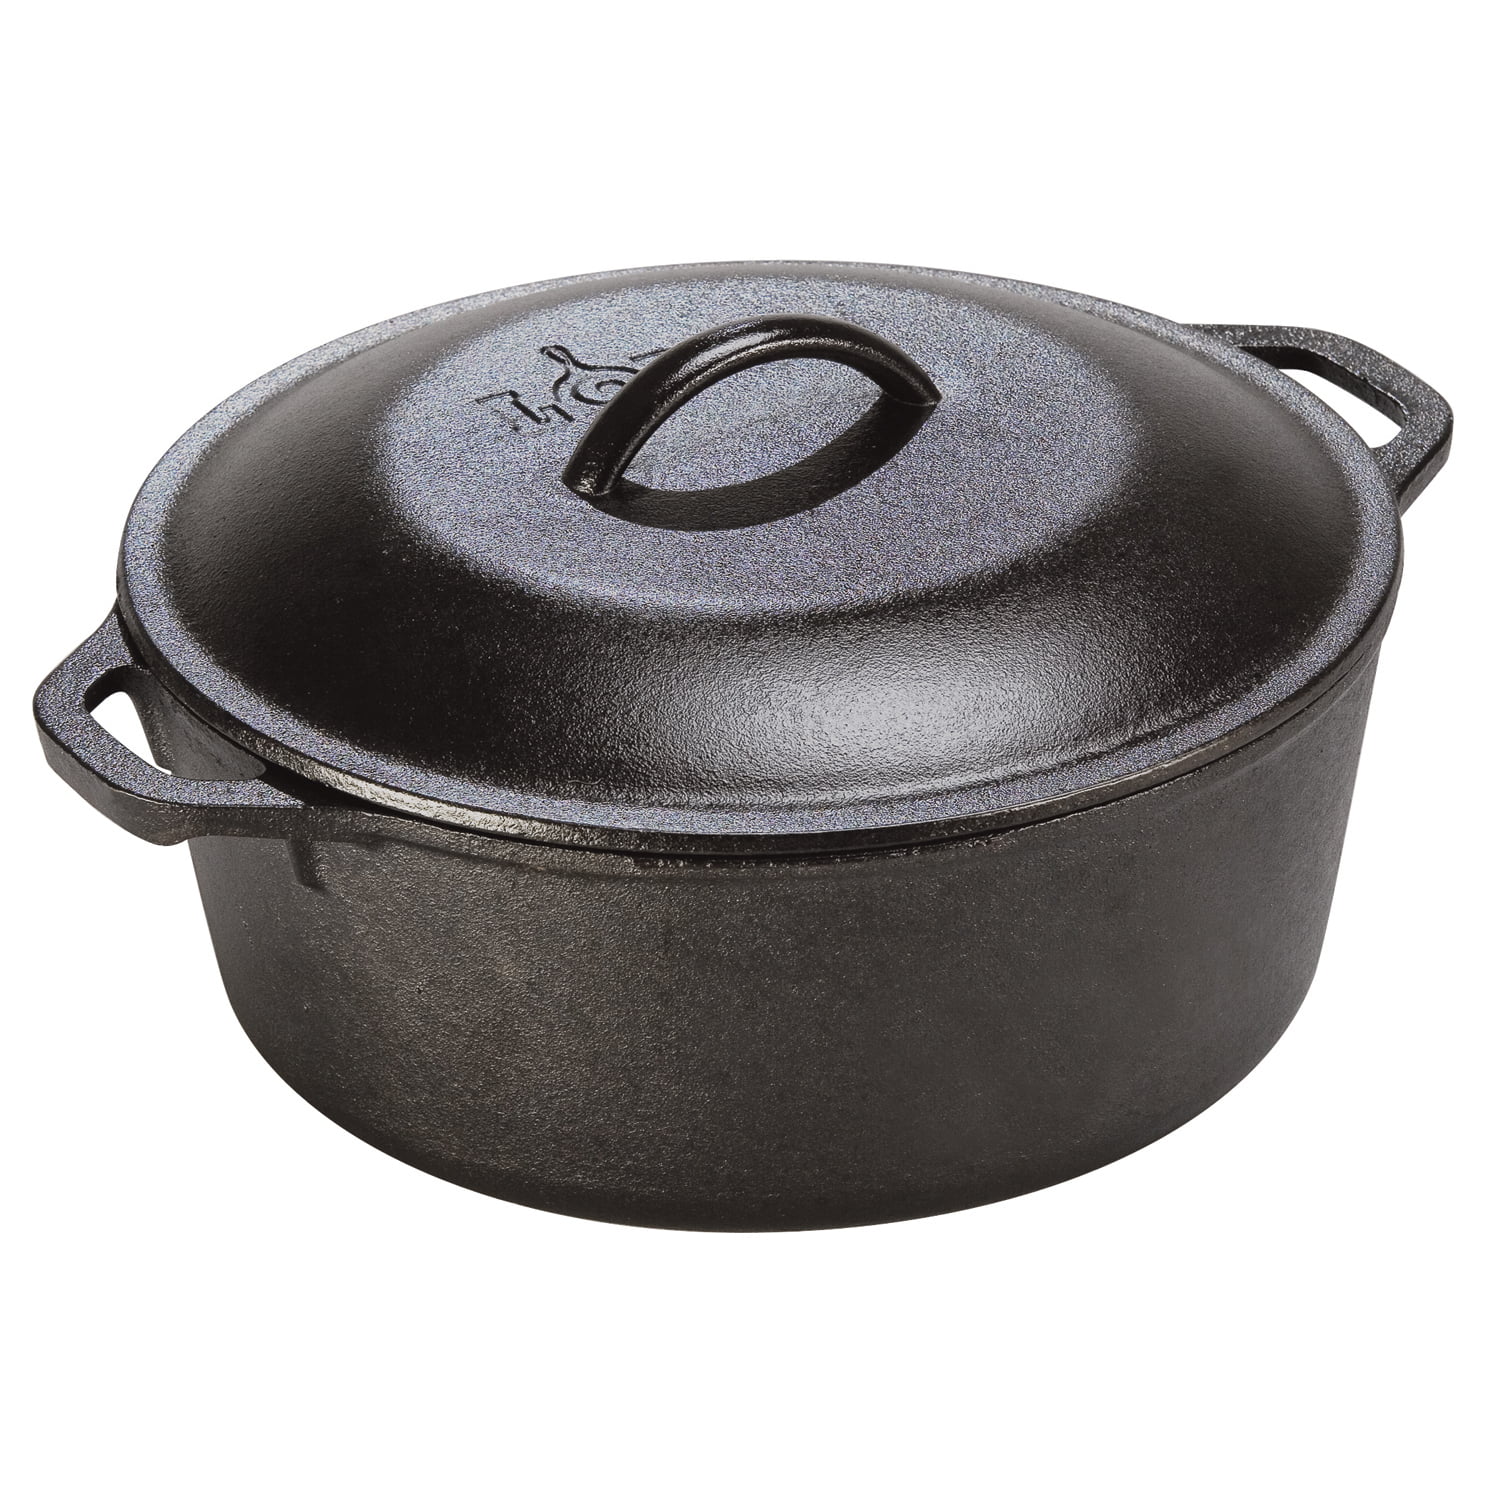 Lodge 5 Piece Seasoned Cast Iron Set Griddle Skillet Dutch Oven Pan Pot Cover